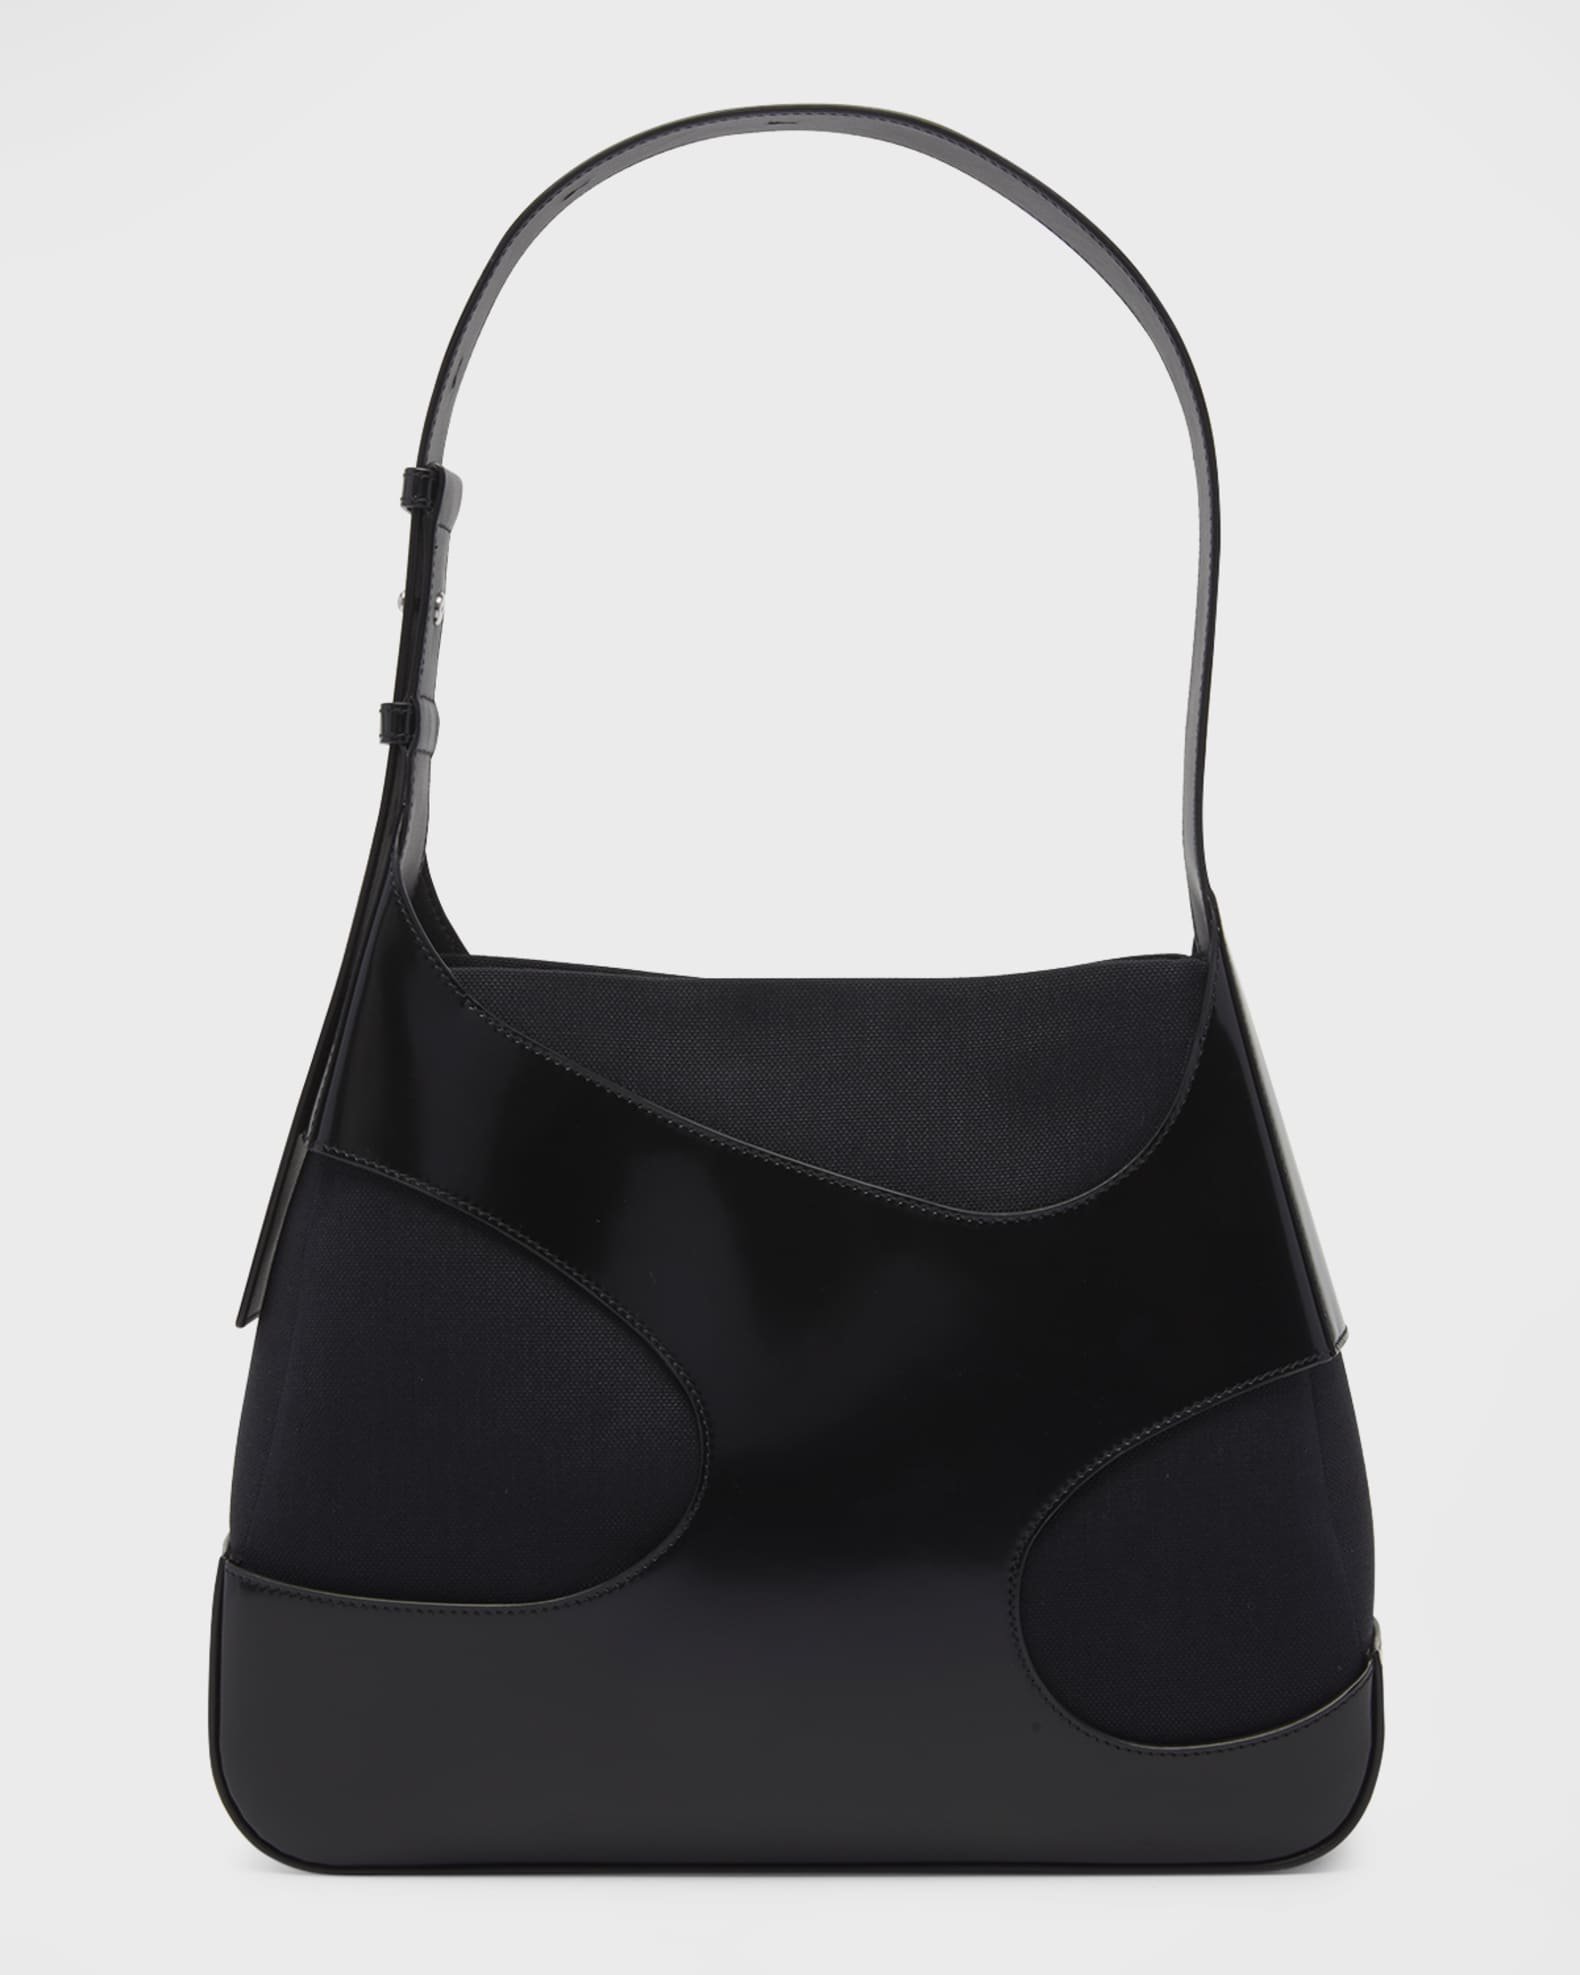 Lauren Ralph Lauren Purse Womens Faux Leather Shoulder Bag Tote Black M  Magnetic